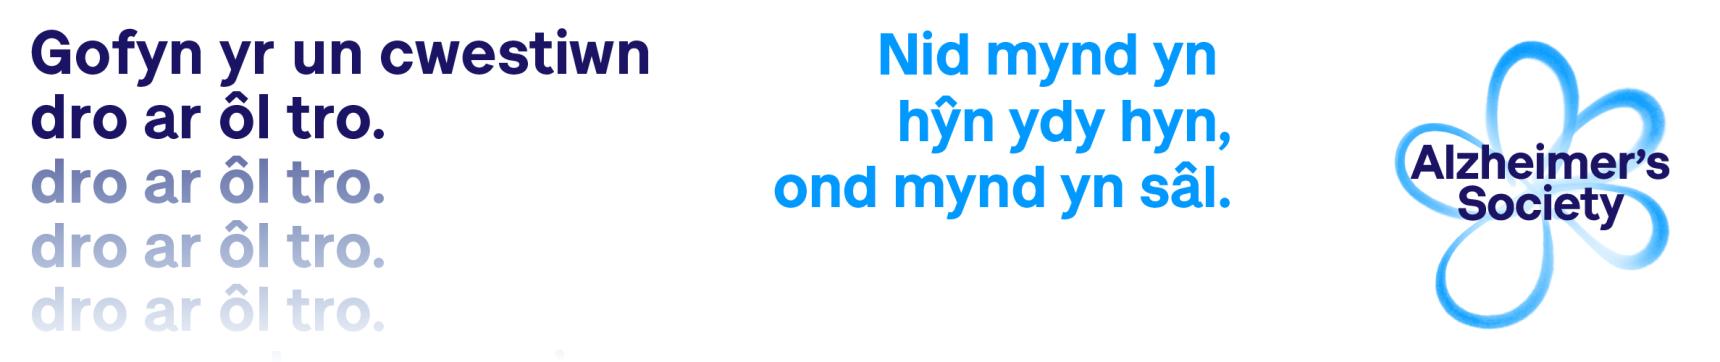 Email signature for Dementia Action Week 22 campaign in Welsh language. Text reads "Gofyn yr un cwestiwn dro ar ôl tro. Nid mynd yn hŷn, ond mynd yn sâl."